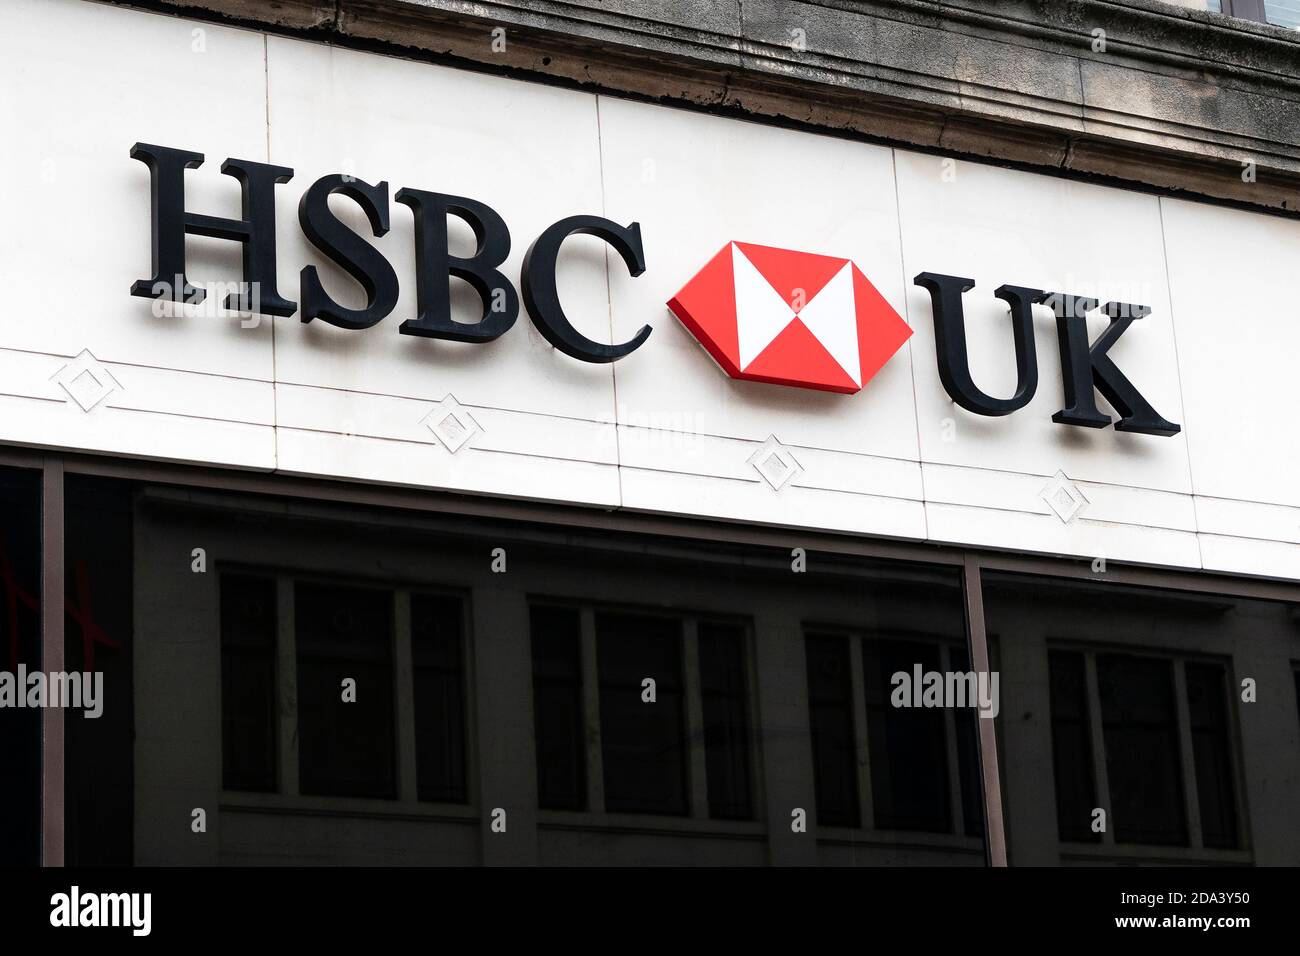 Logo commercial de la banque HSBC Royaume-Uni avec symbole de diamant au-dessus des locaux de la banque, Glasgow, Écosse, Royaume-Uni Banque D'Images